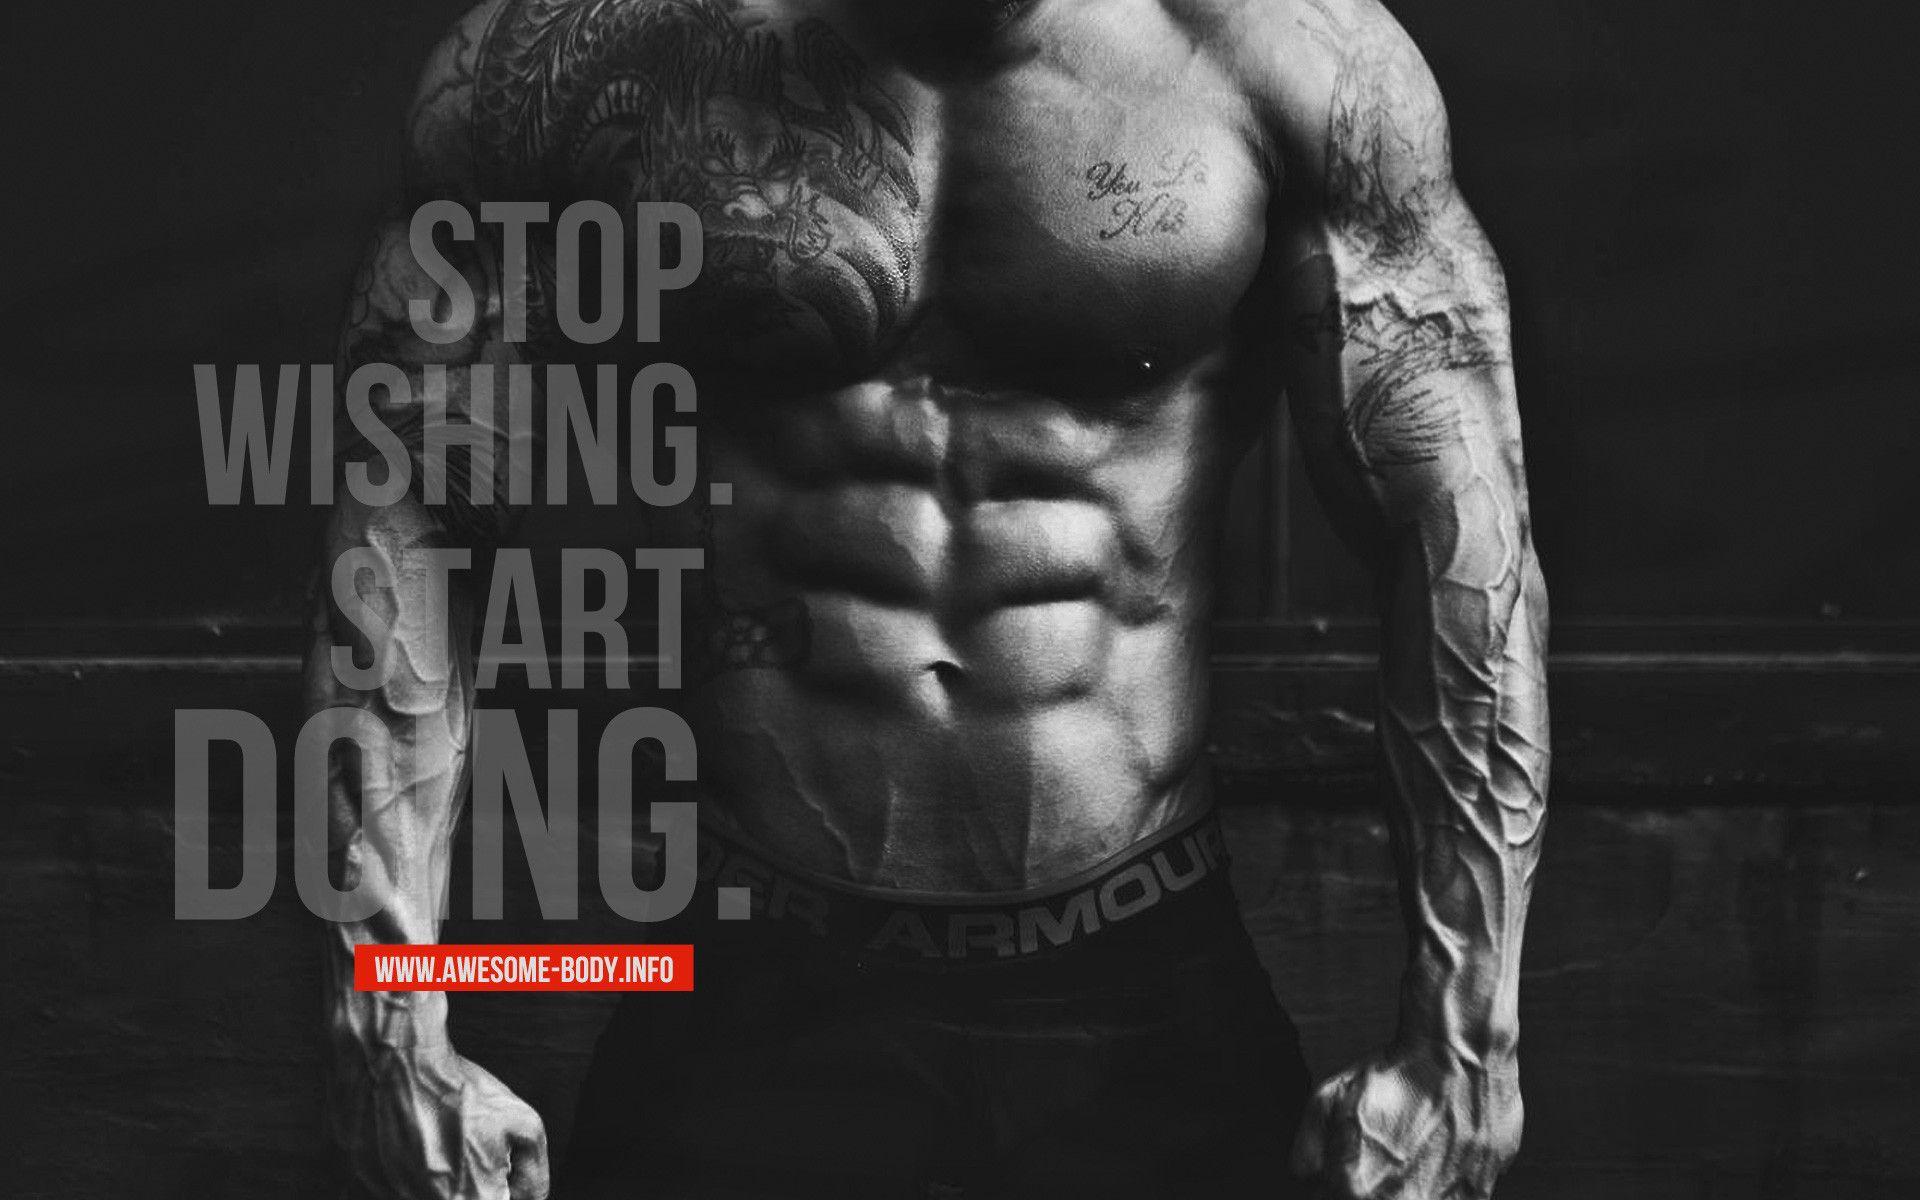 Motivational Workout Wallpaper